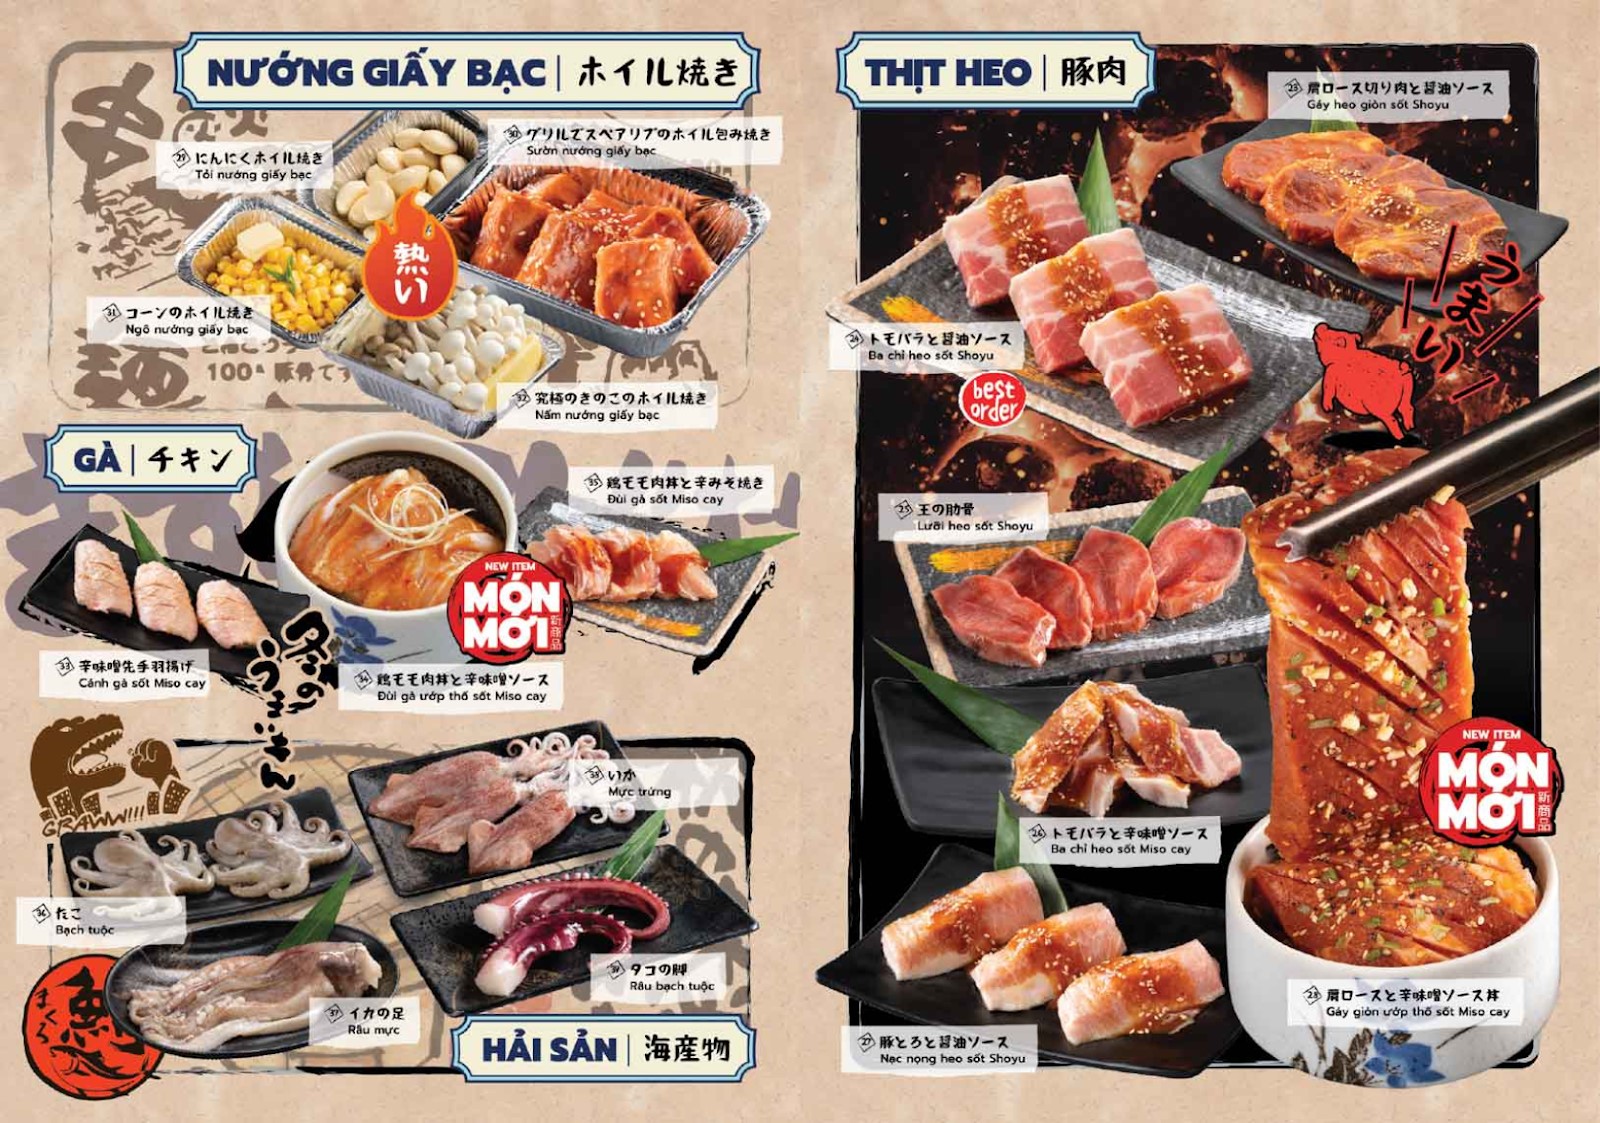 menu đa dạng tại Yakimono